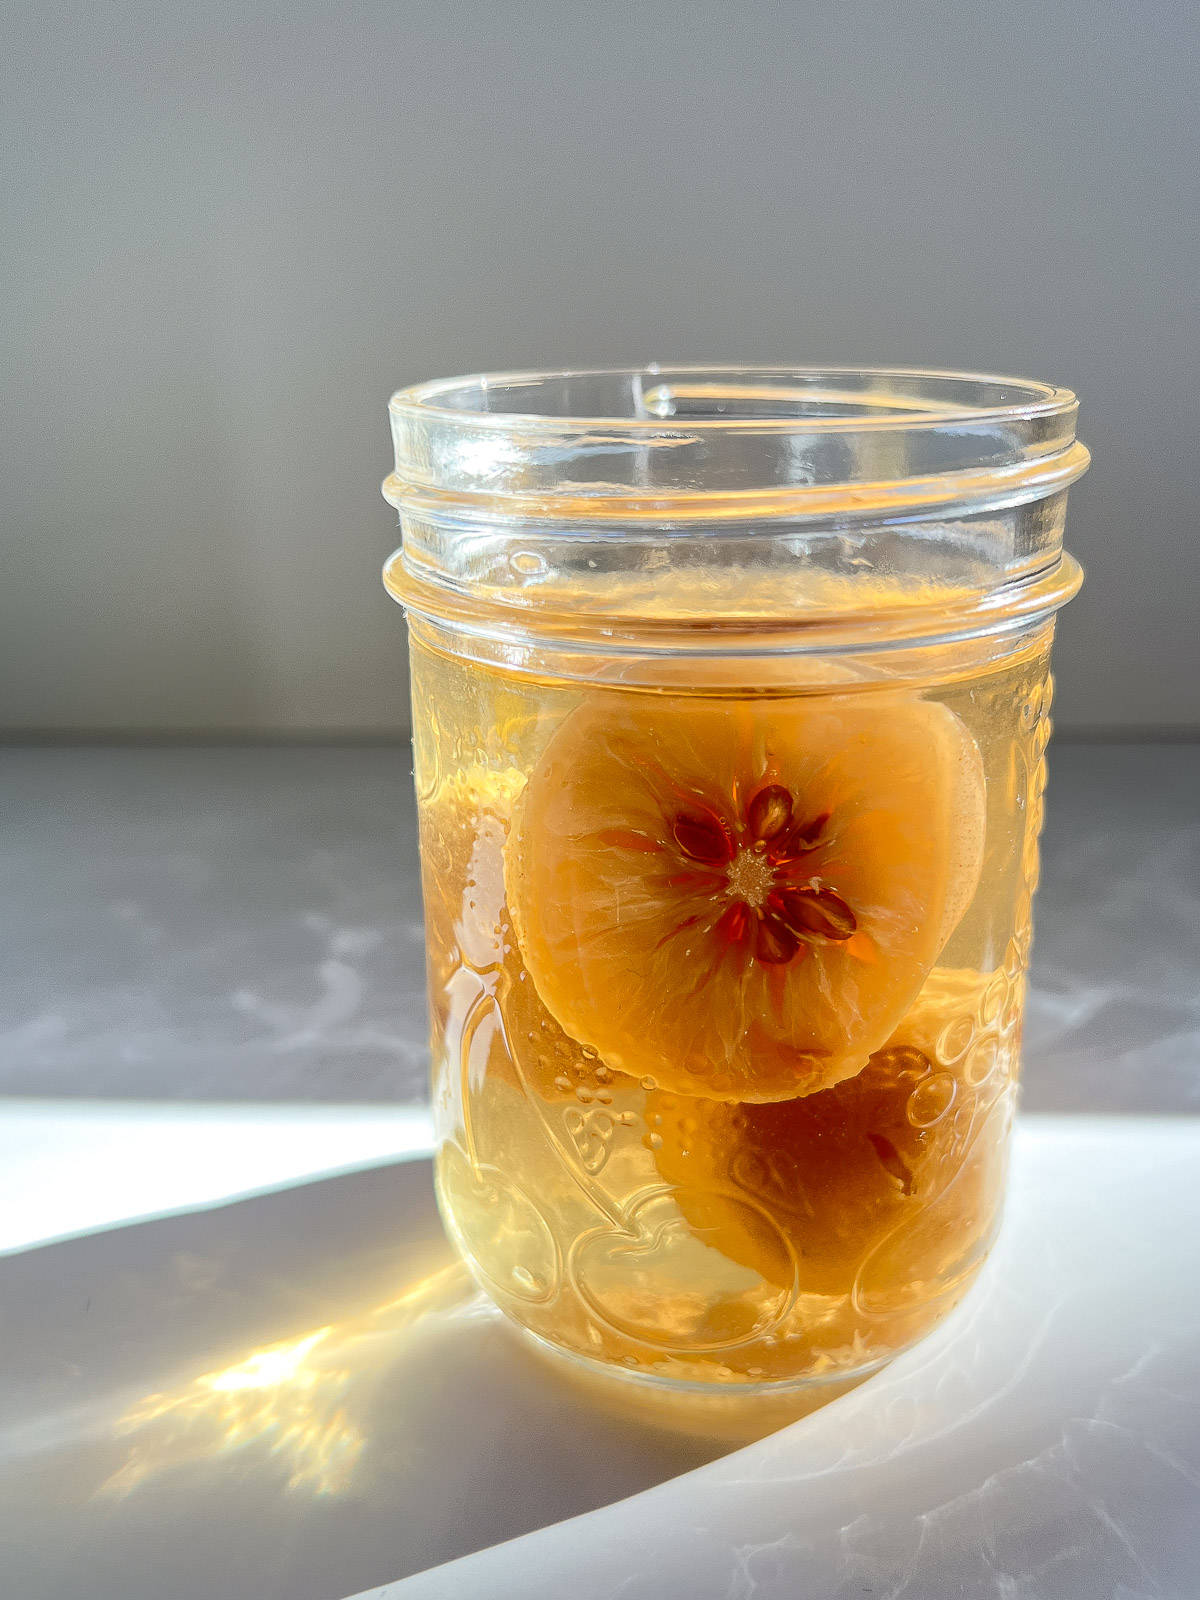 Preserved lemons in a jar.